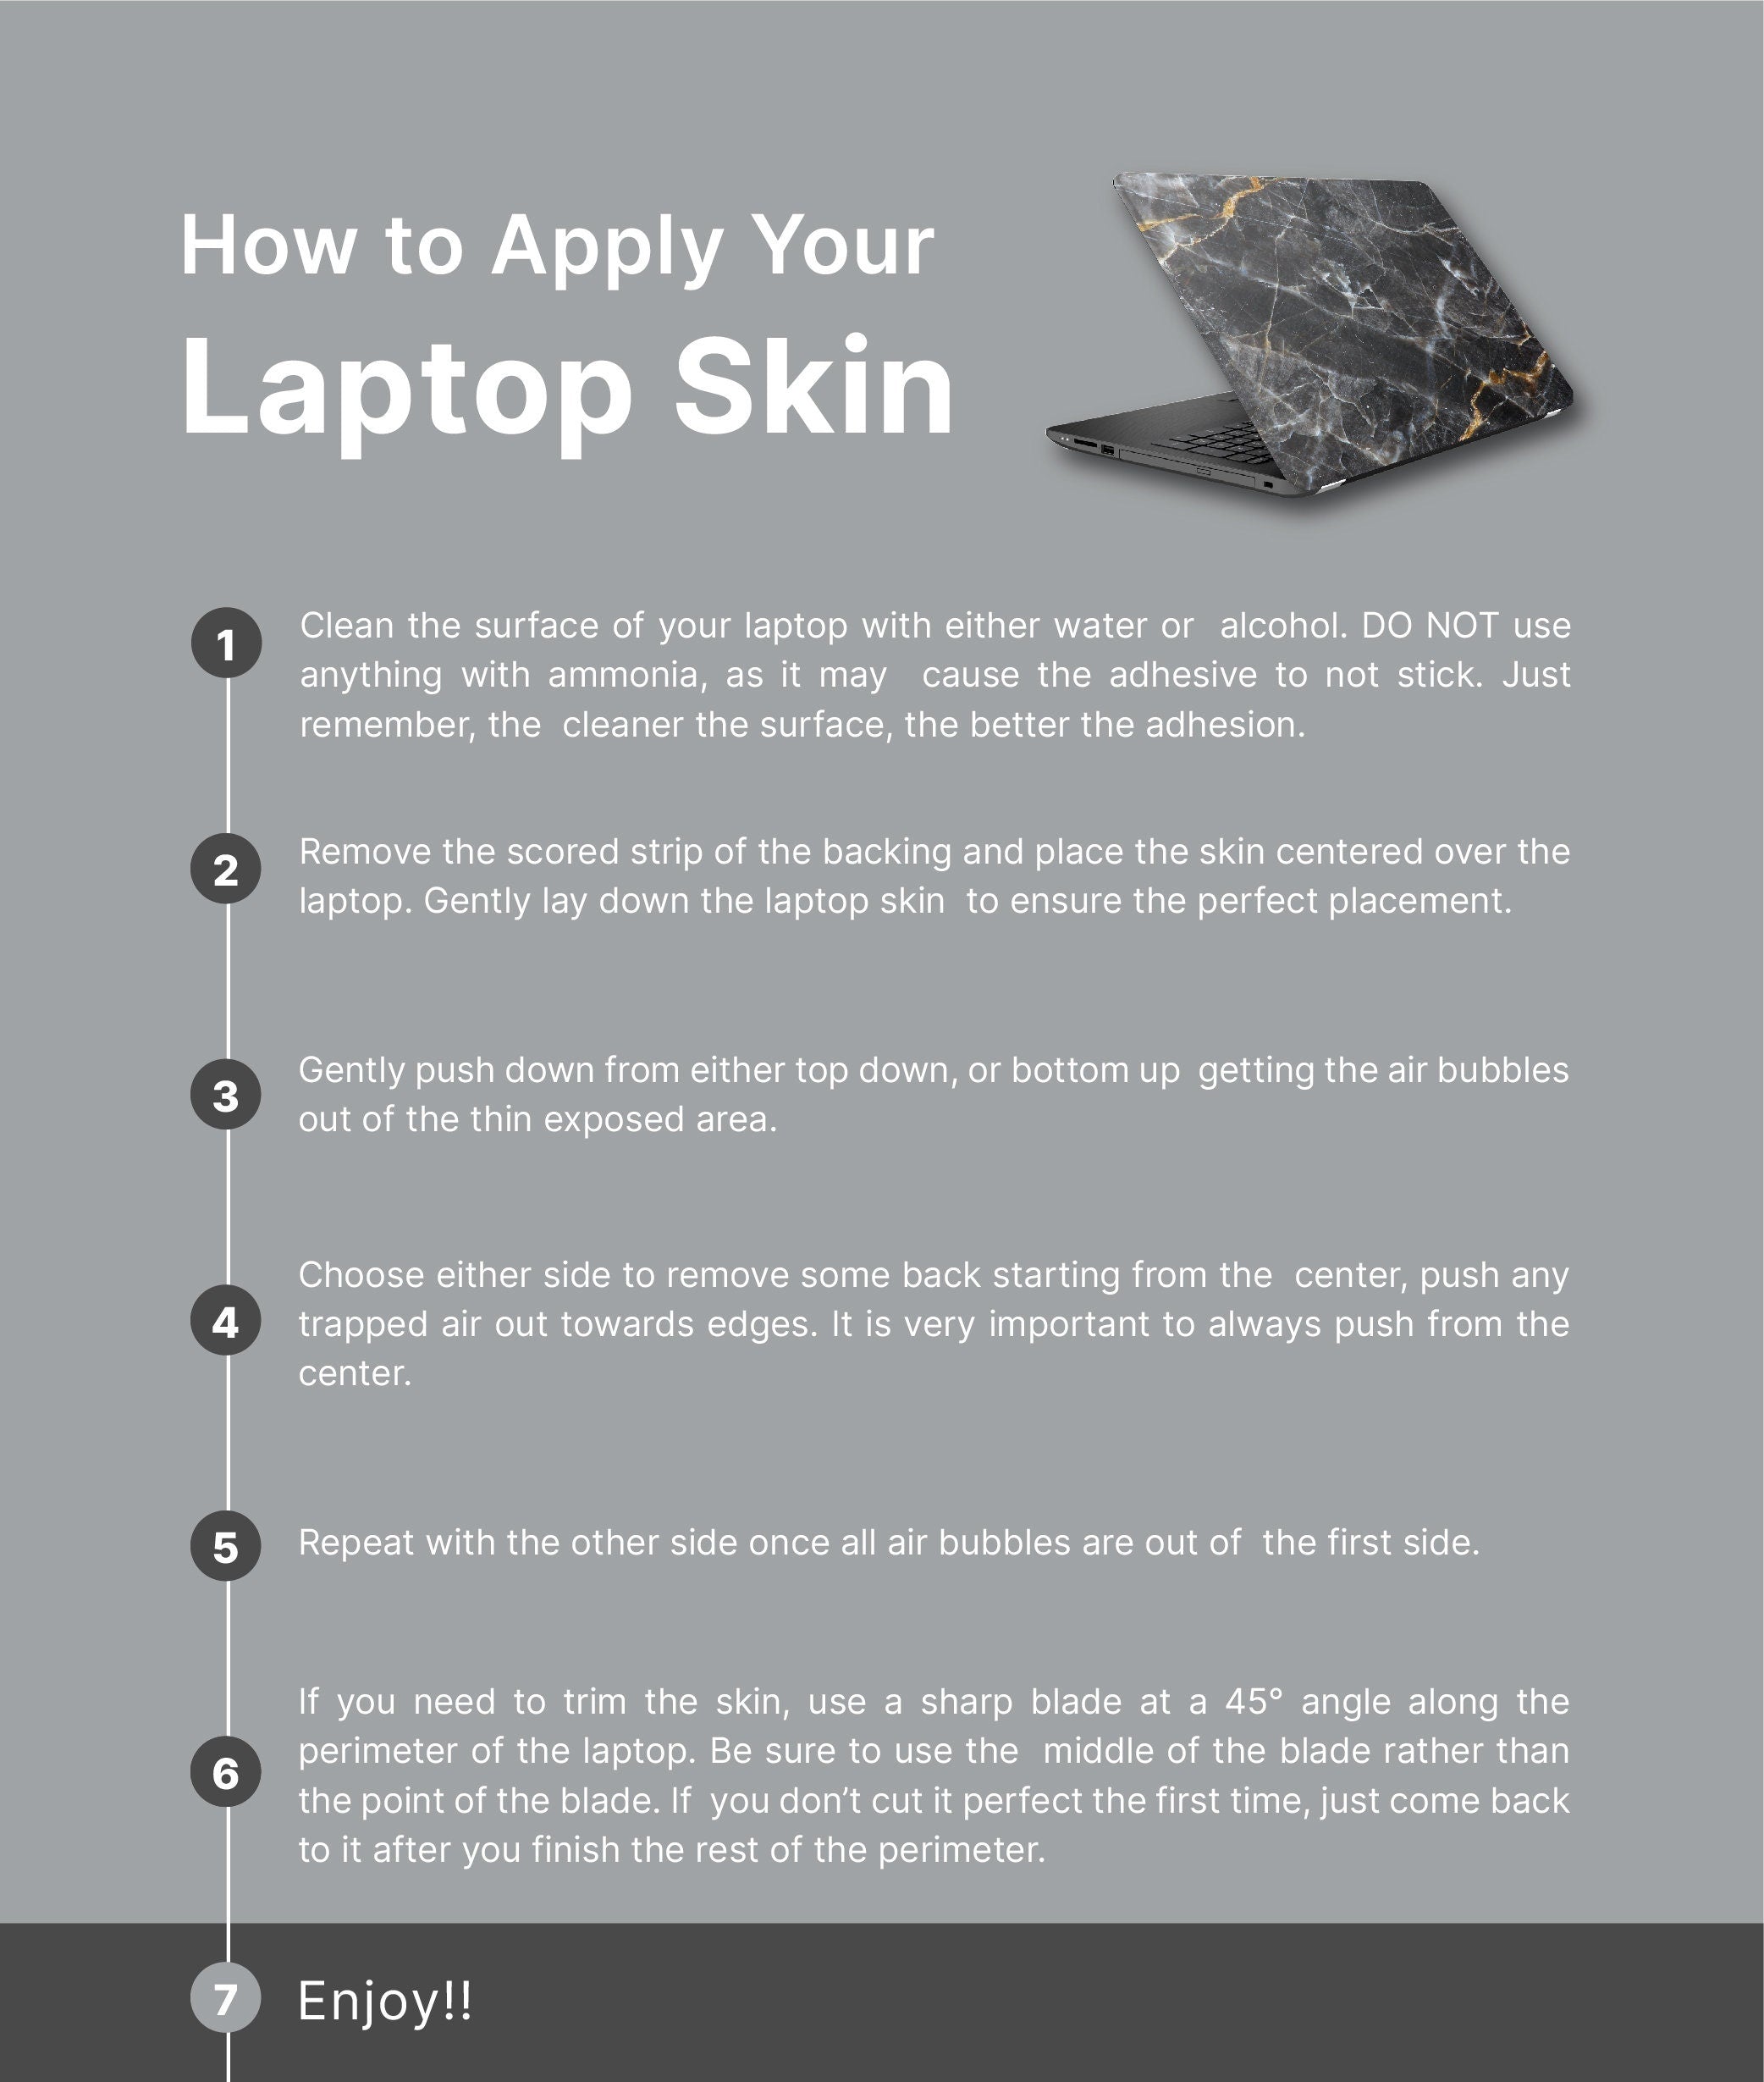 Yellow Floral Laptop Skin, Laptop Cover, Laptop Skins, Removable Laptop Skins, Laptop Decal, Customized Laptop Skin, Laptop Stickers 297